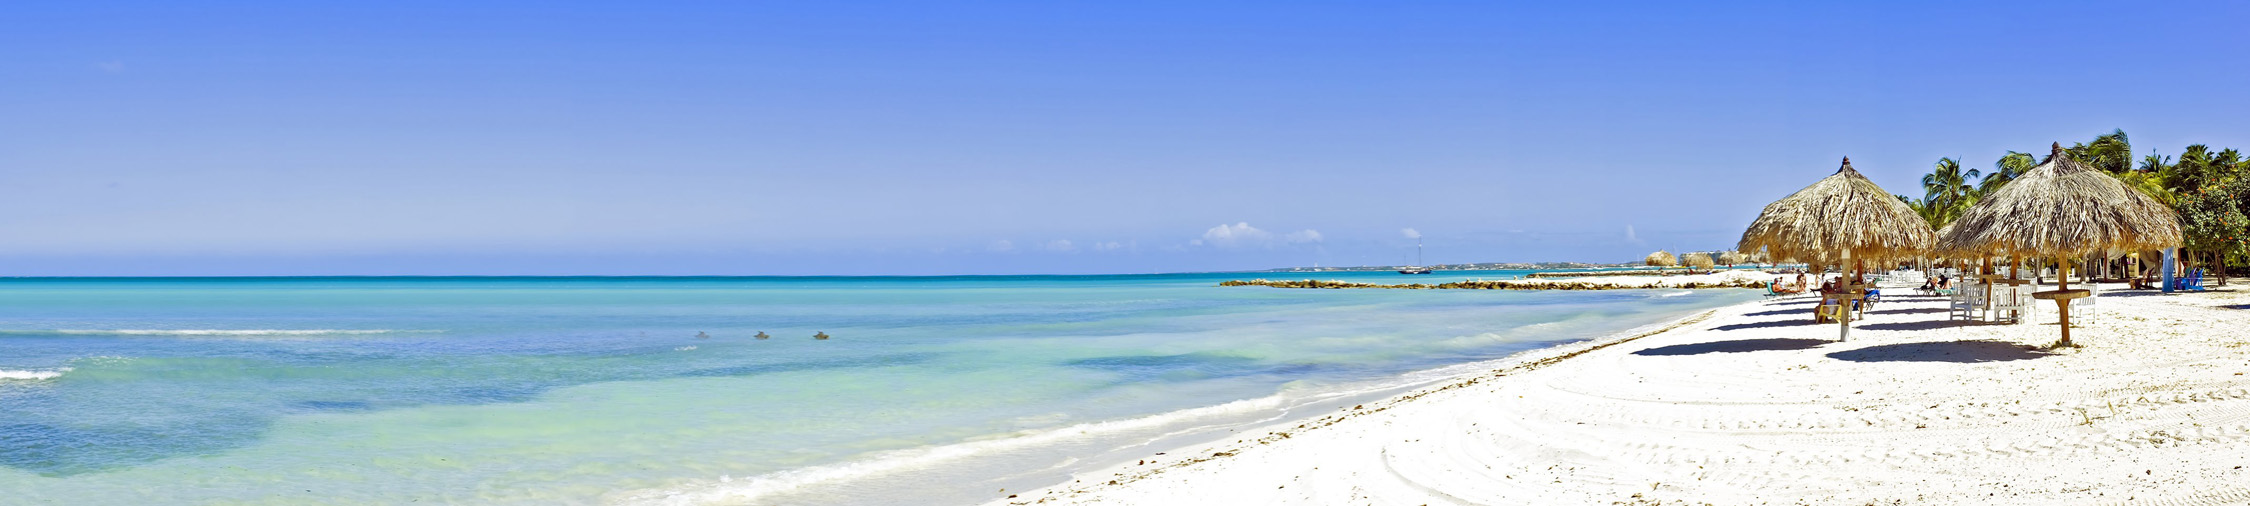 Aruba Panorama